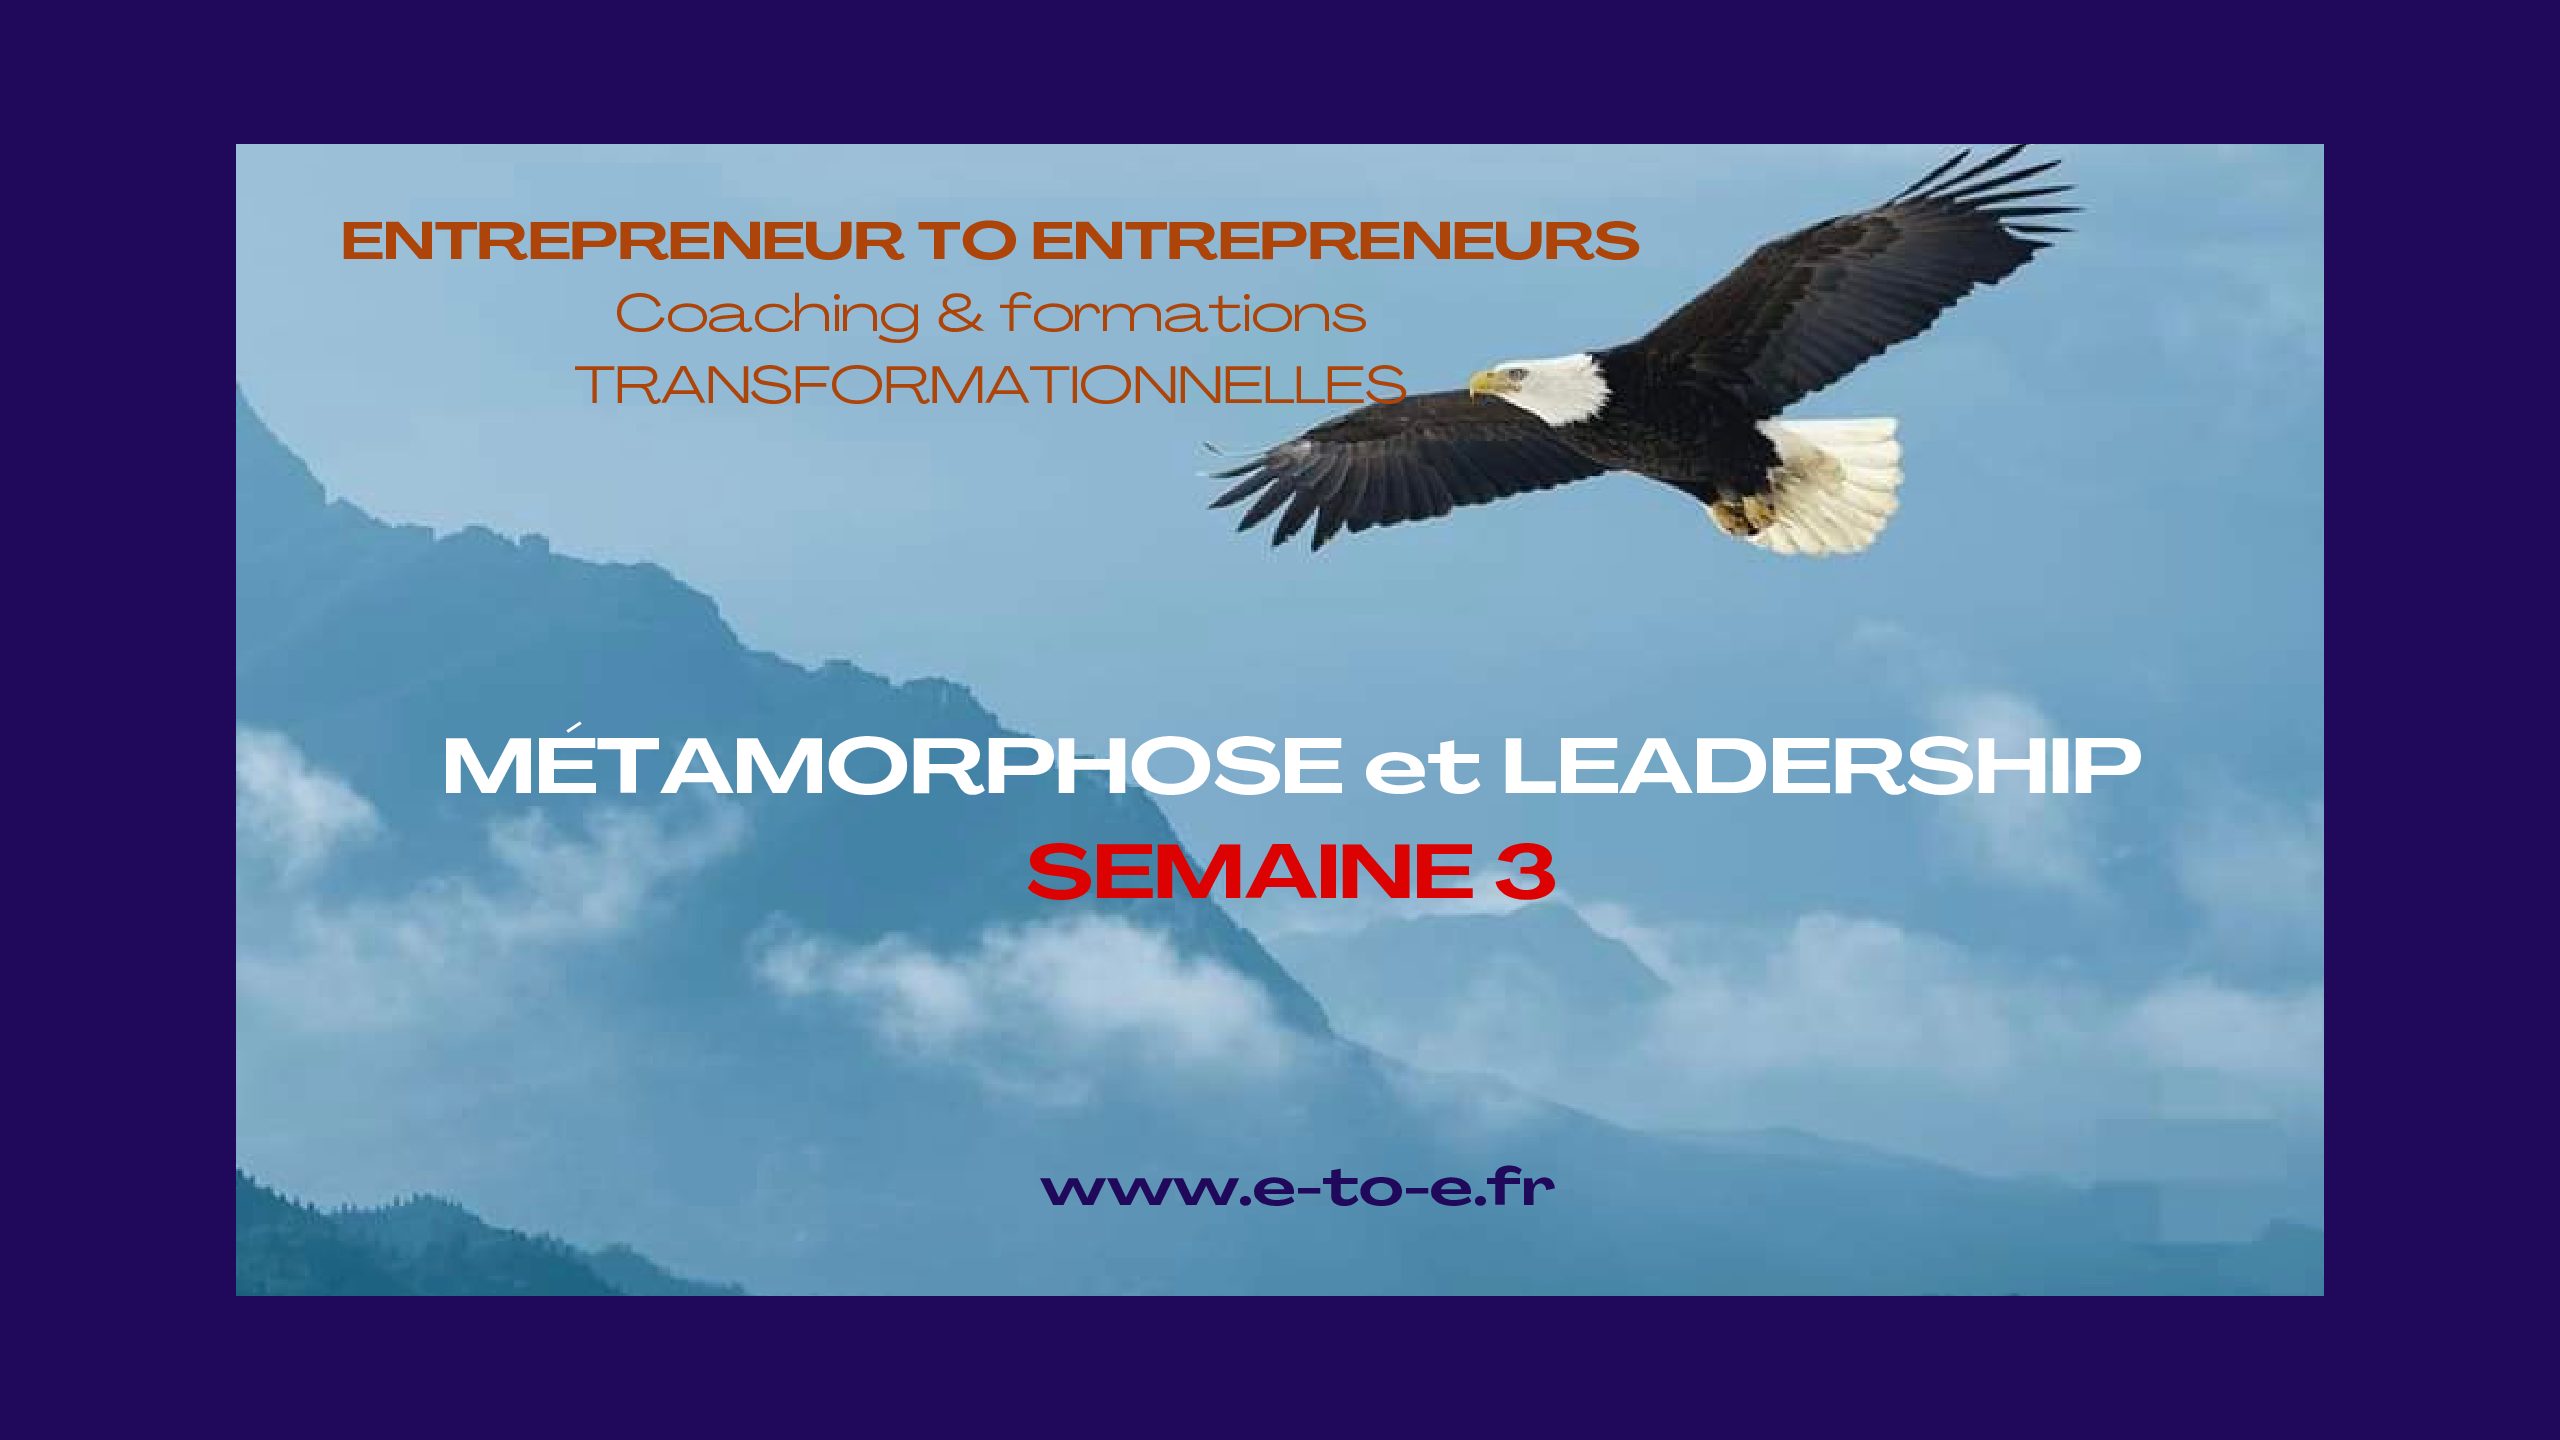 MÉTAMORPHOSE & LEADERSHIP SEMAINE 3